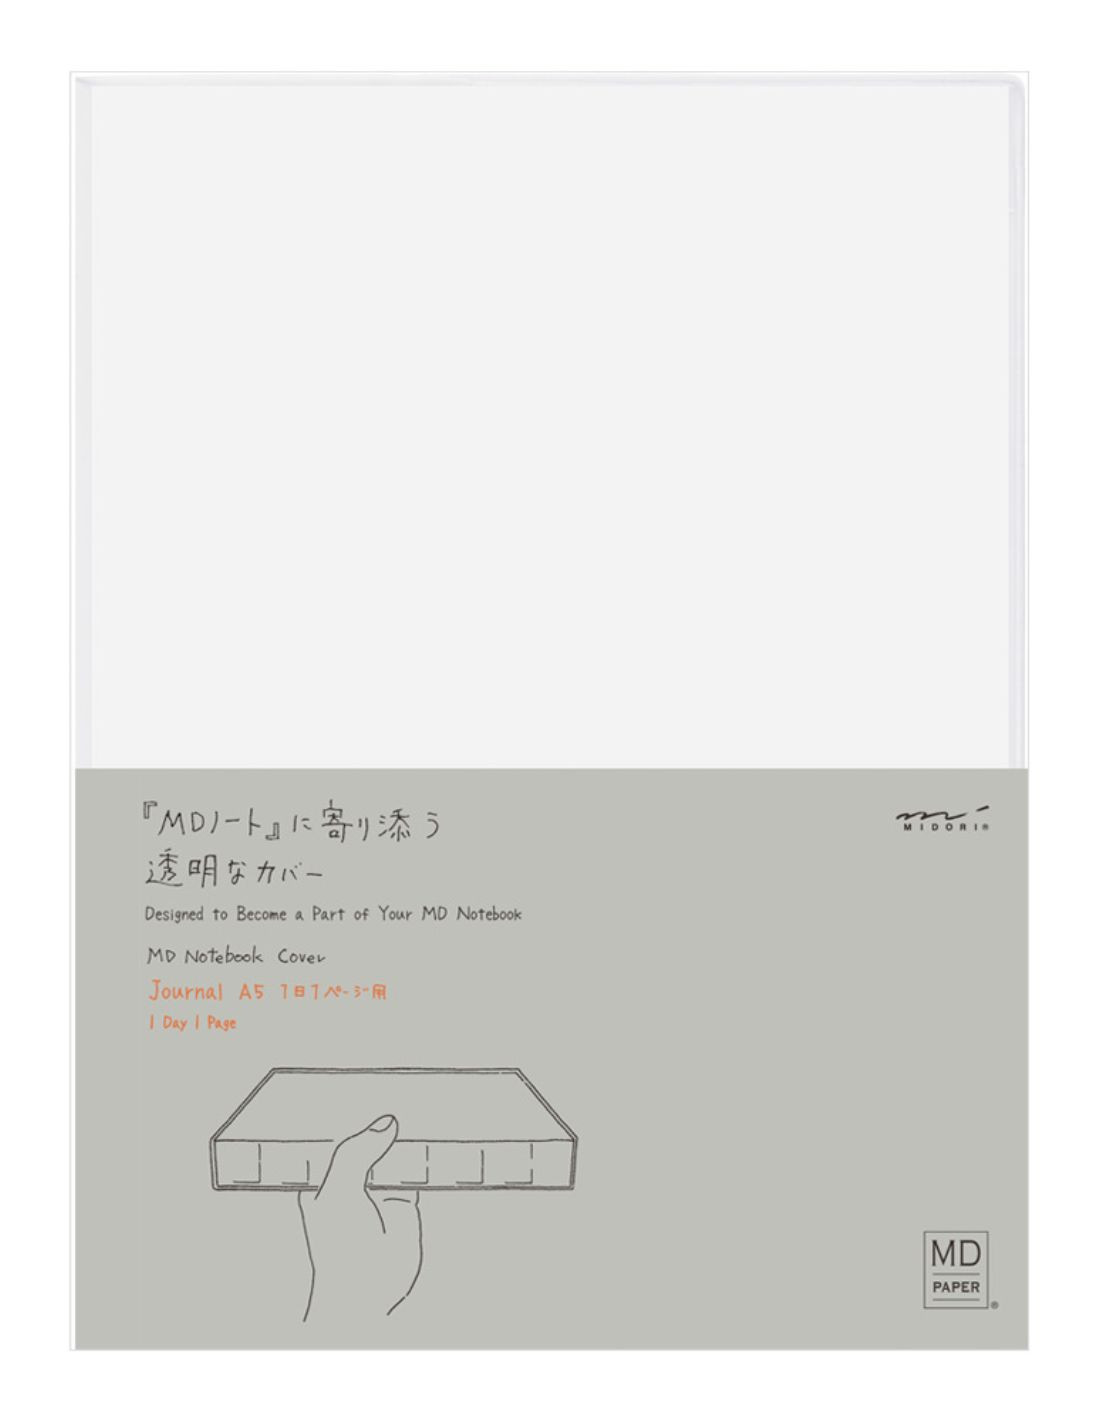 Couverture pour carnet MD Paper - A5 CODEX - PVC - Midori